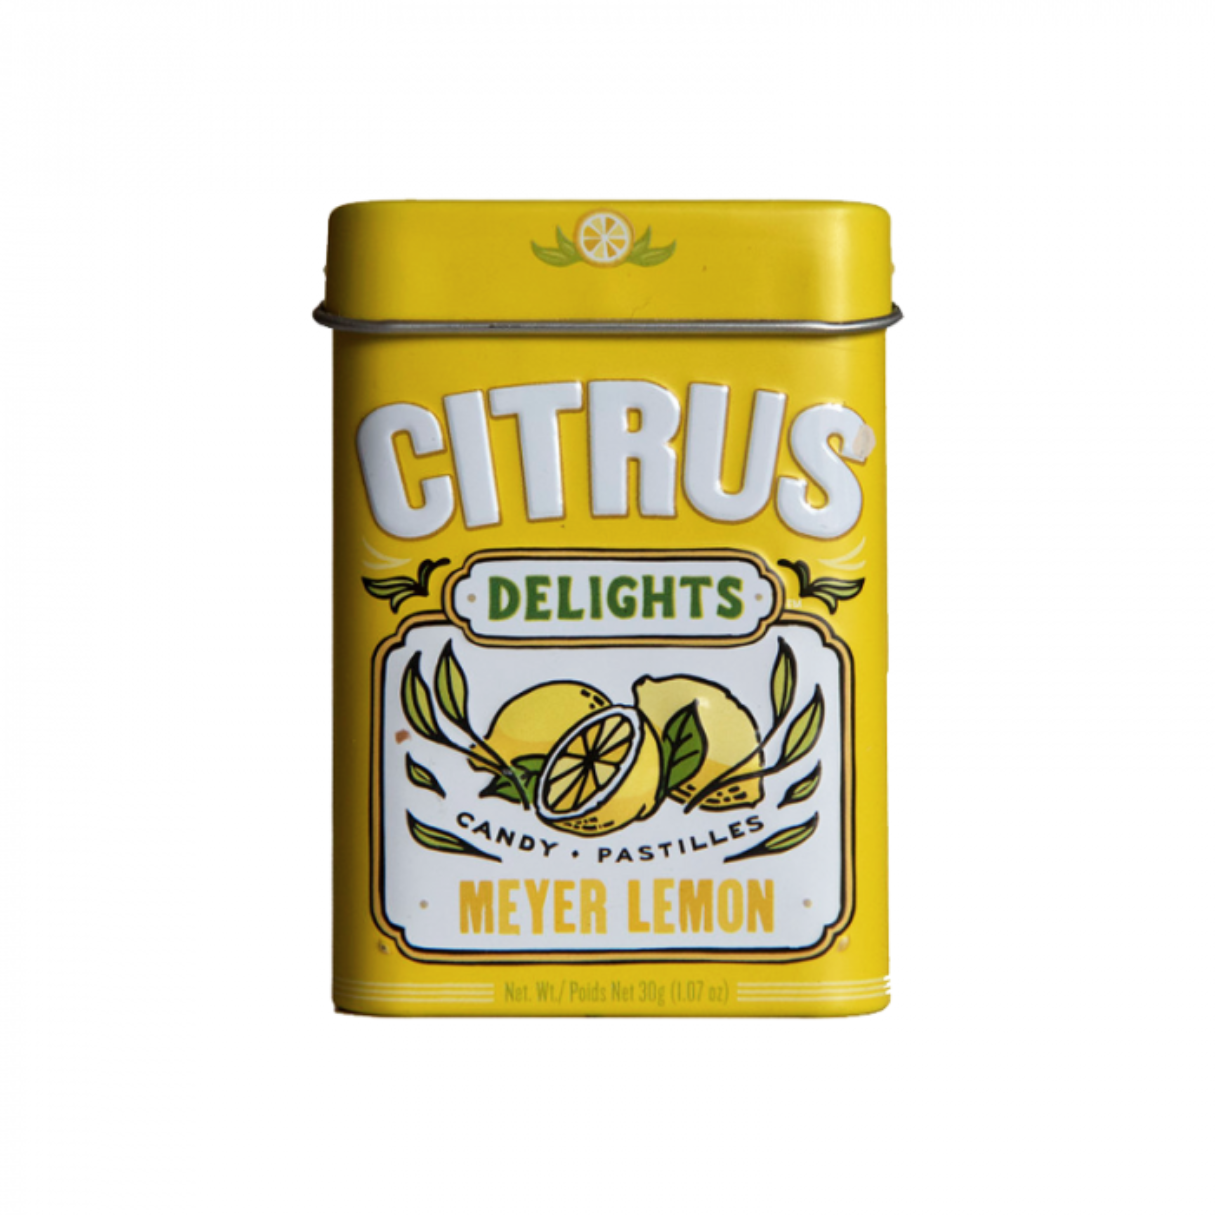 Citrus Delights Meyer Lemon 1.07oz - 144ct